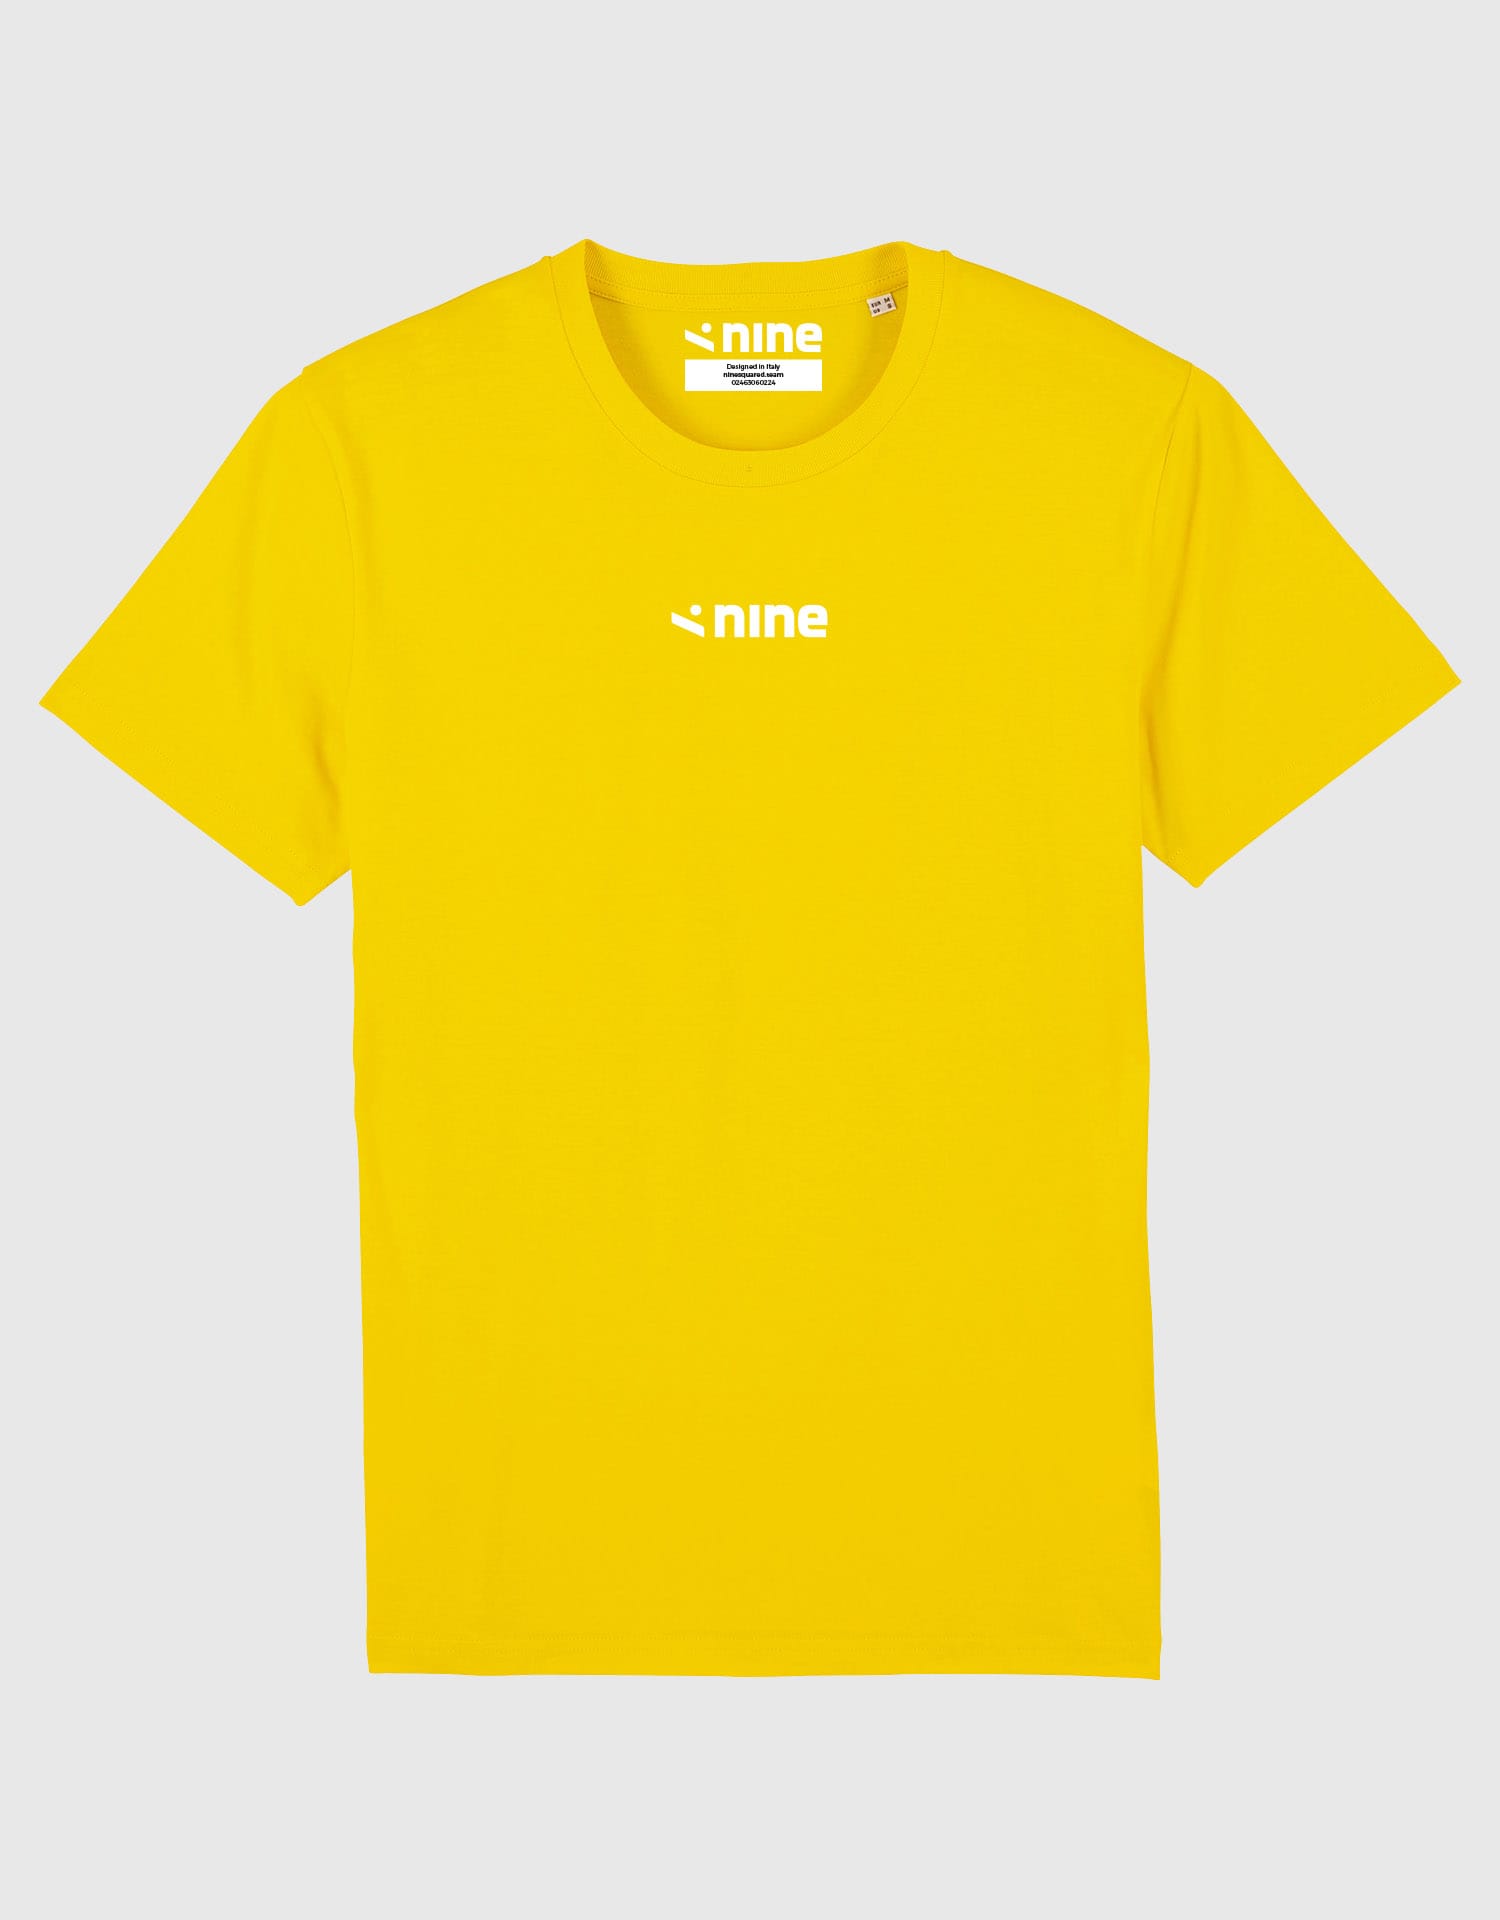 ninesquared-tshirt-yellow-fr-U